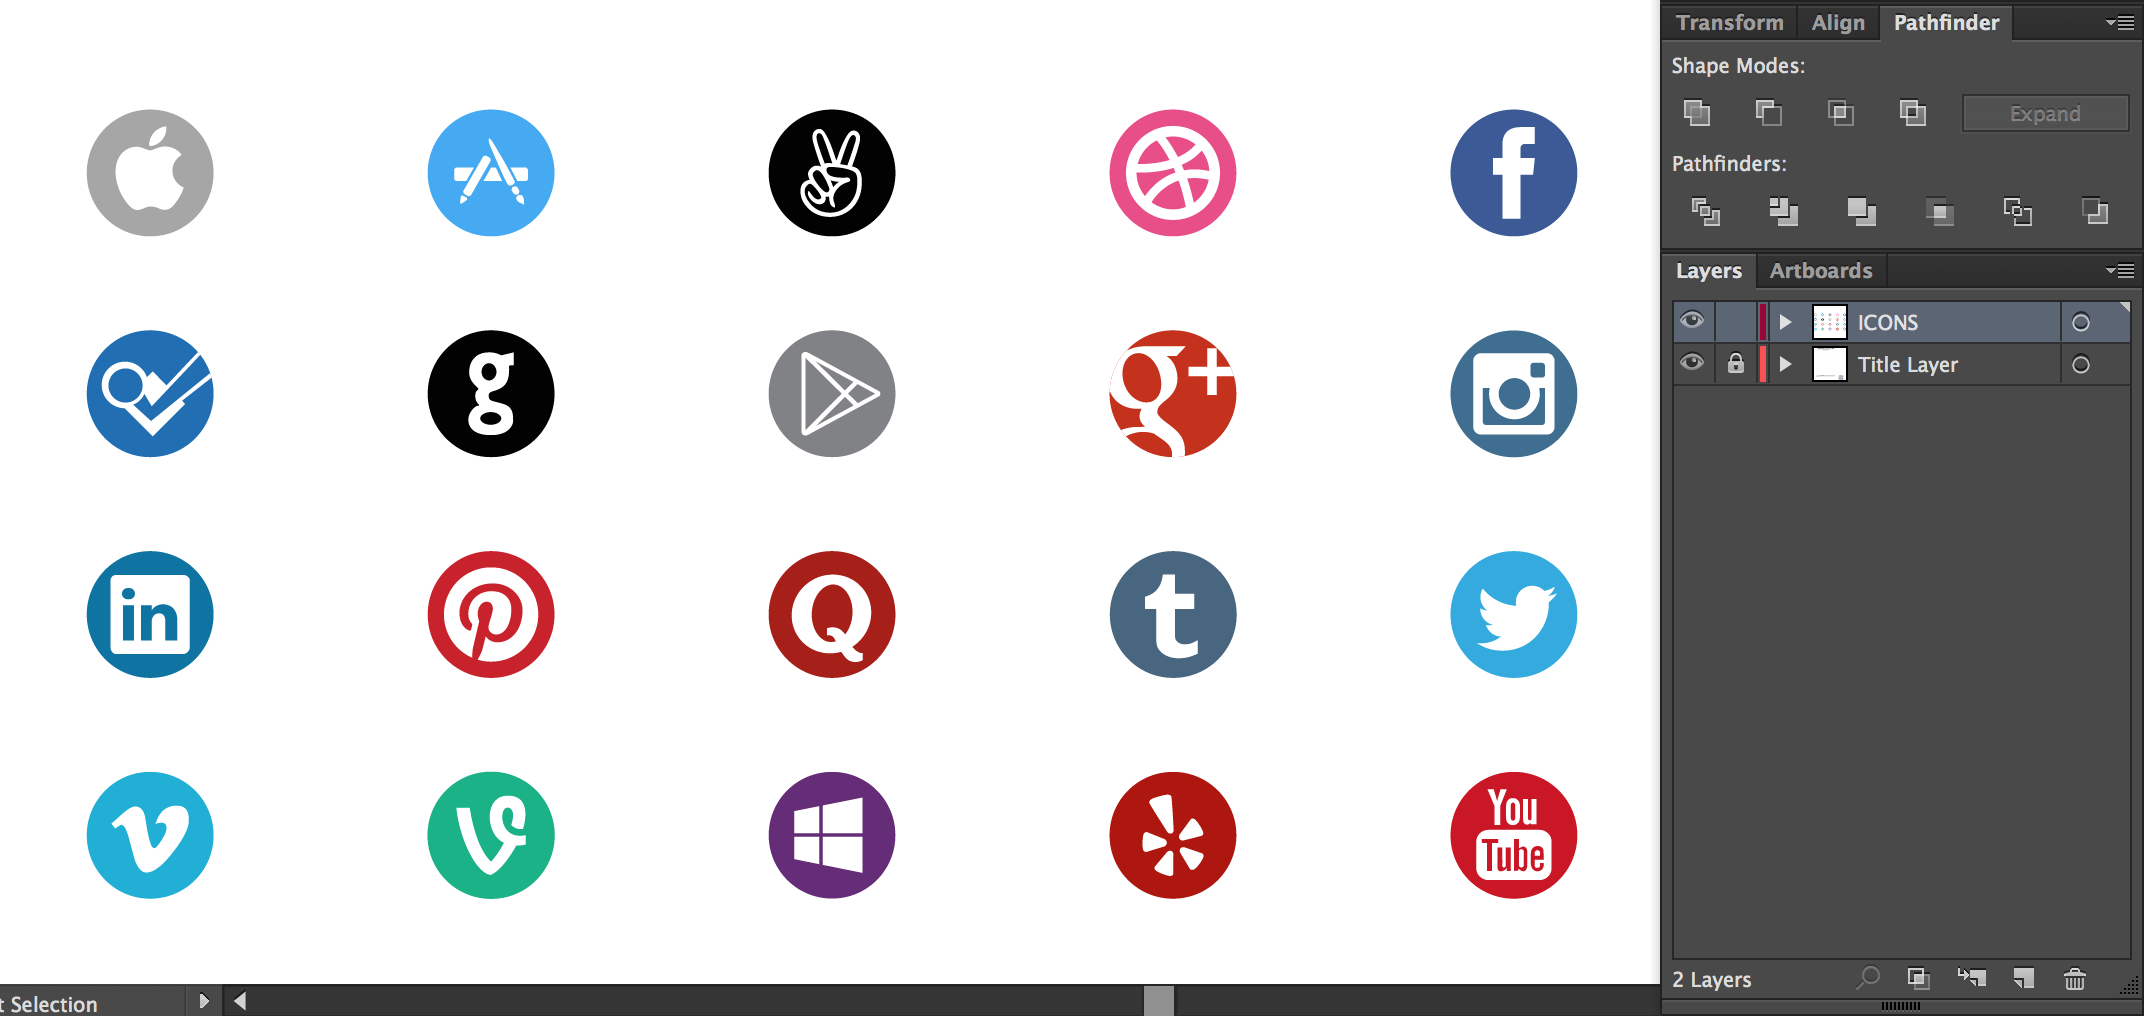 Social Media Icons Circle Vector